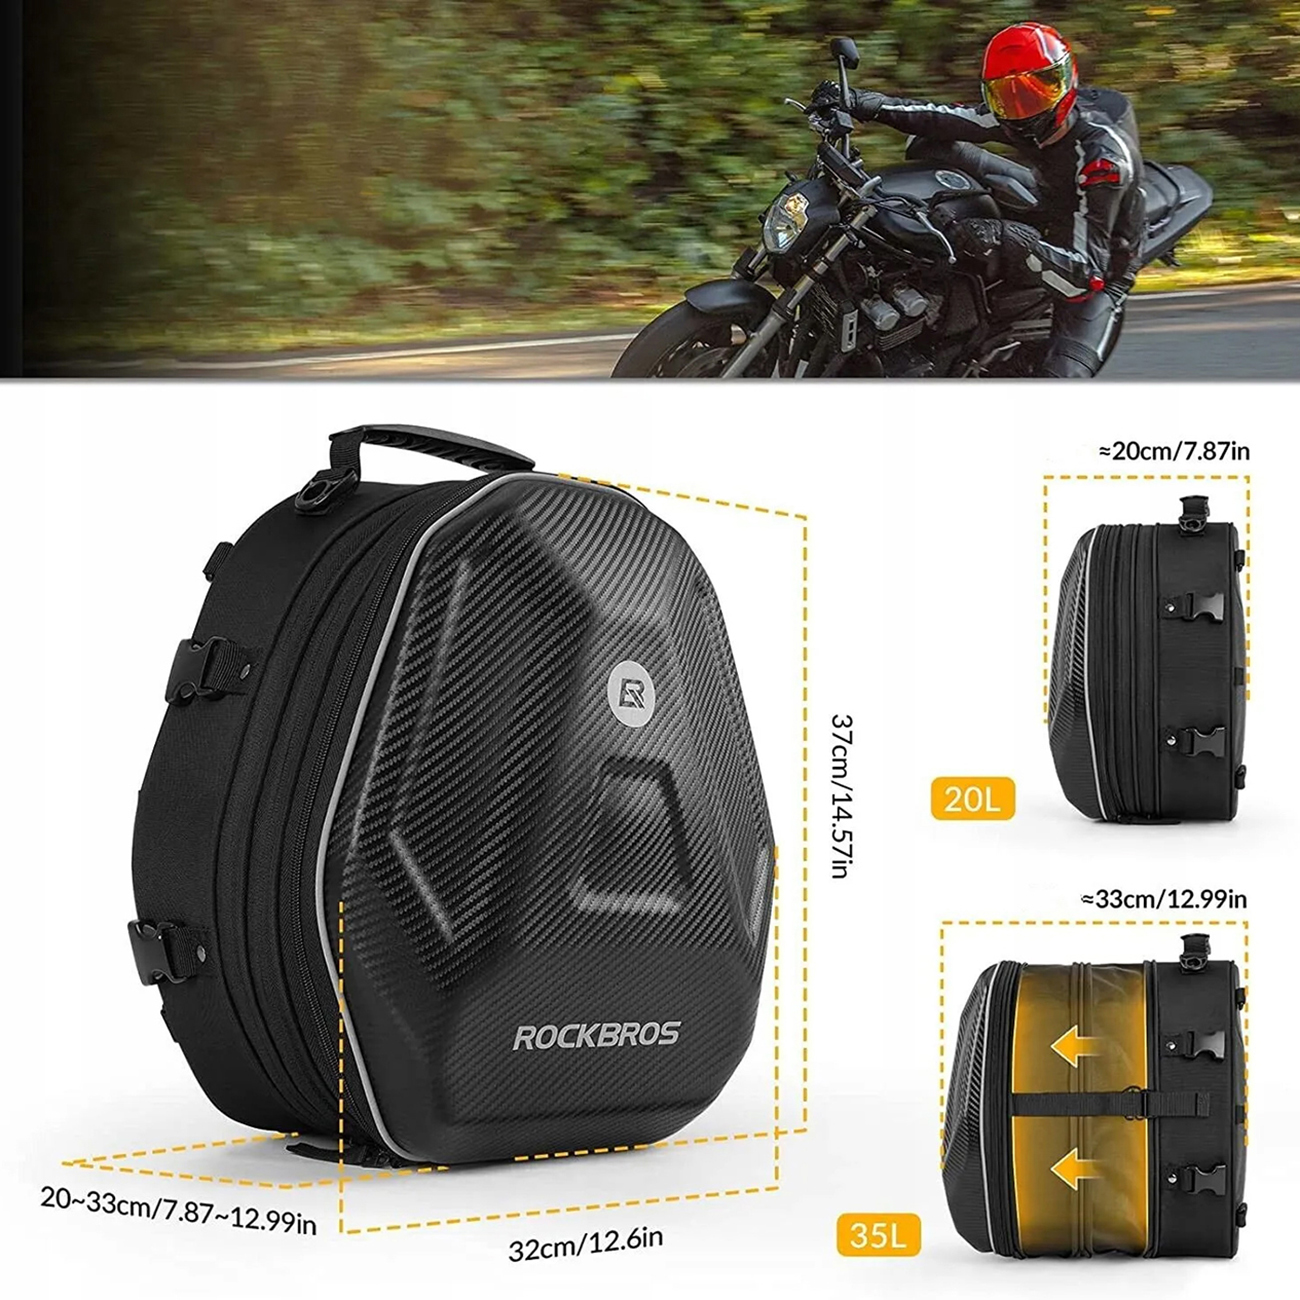 Zeigt die Abmessungen und das Fassungsvermögen der Motorradtasche Rockbros 30140026001